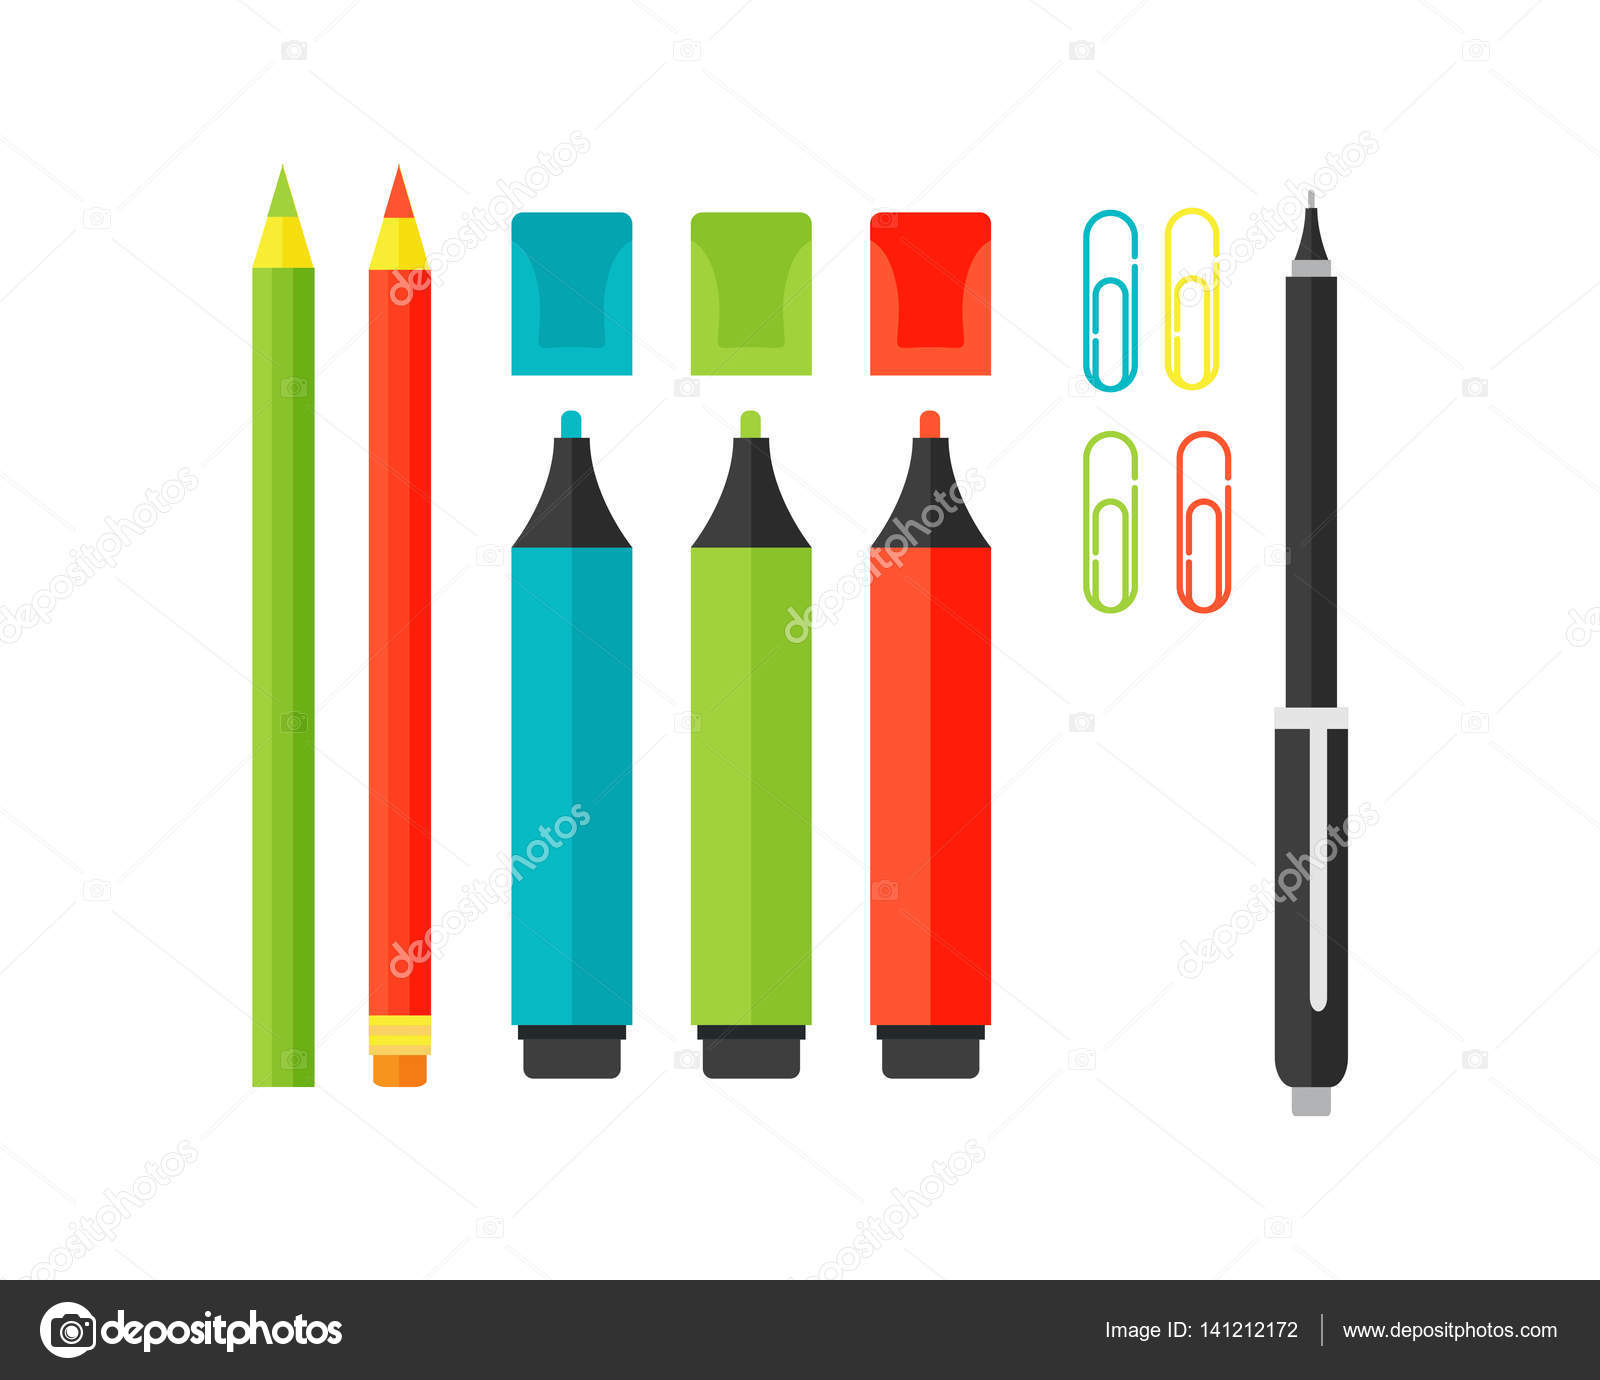 https://st3.depositphotos.com/6741230/14121/v/1600/depositphotos_141212172-stock-illustration-colored-marker-school-supply-highlighters.jpg